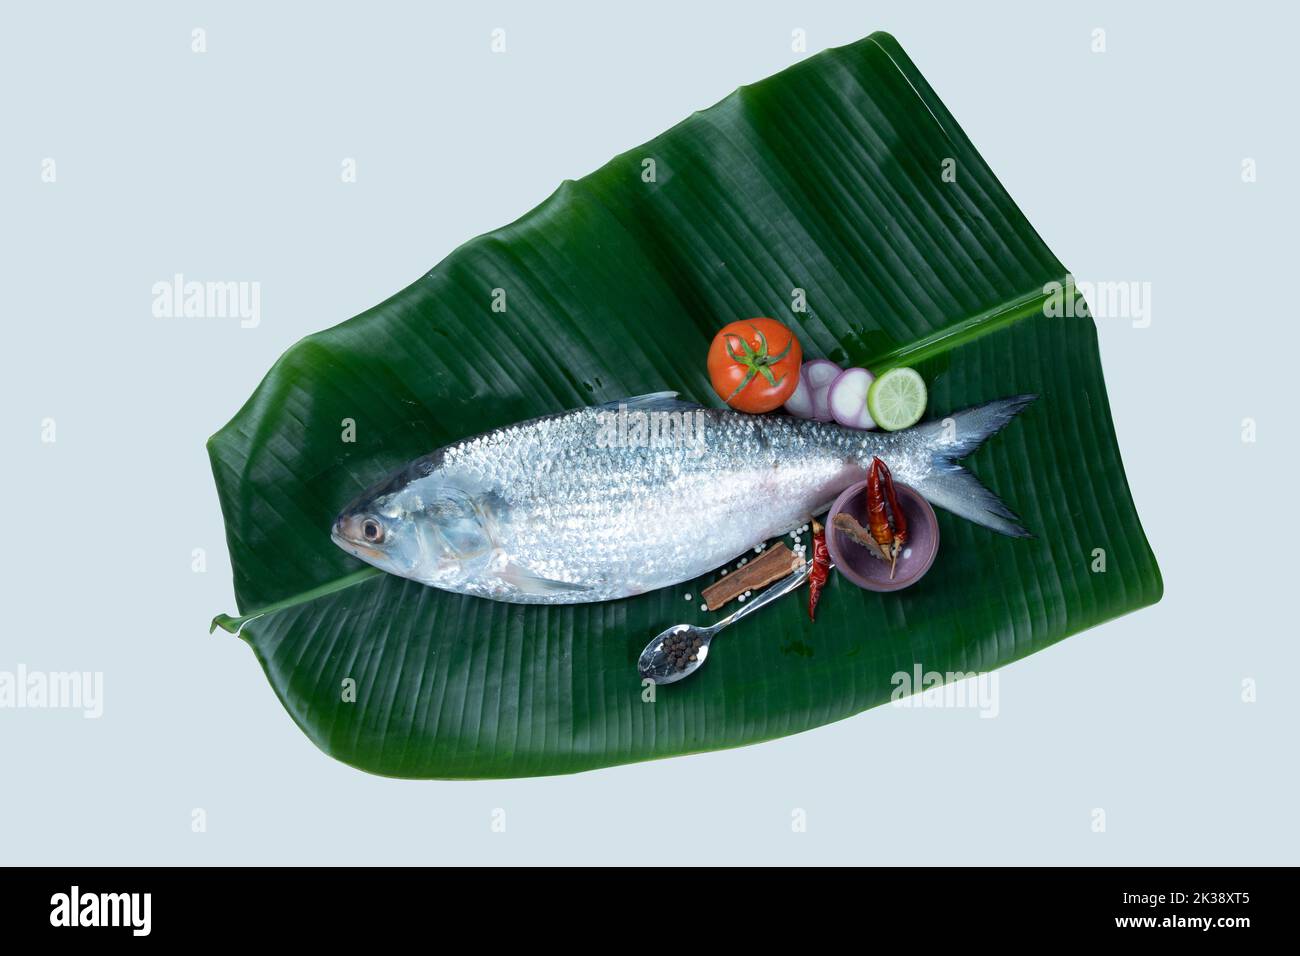 Boishakh panta ilish Pesci nazionali del Bangladesh Hilsafish ilisha terbuk hilsa aringa o hilsa shad famiglia Clupeidae su sfondo bianco, la farsa popolare Foto Stock